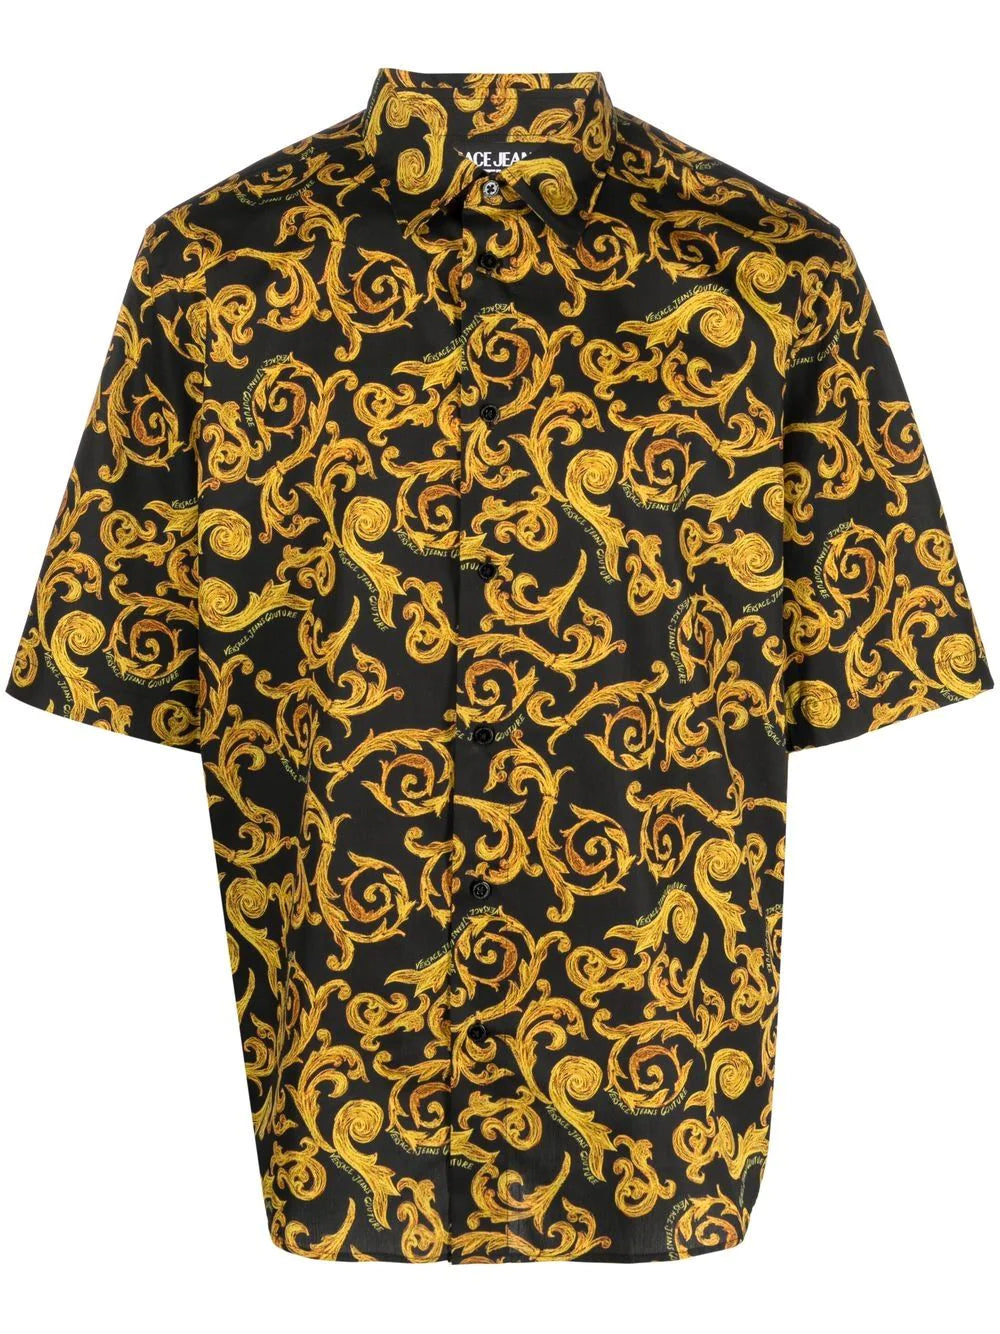 VERSACE MEN Baroque Pattern Print Cotton Shirt Black/Gold - MAISONDEFASHION.COM